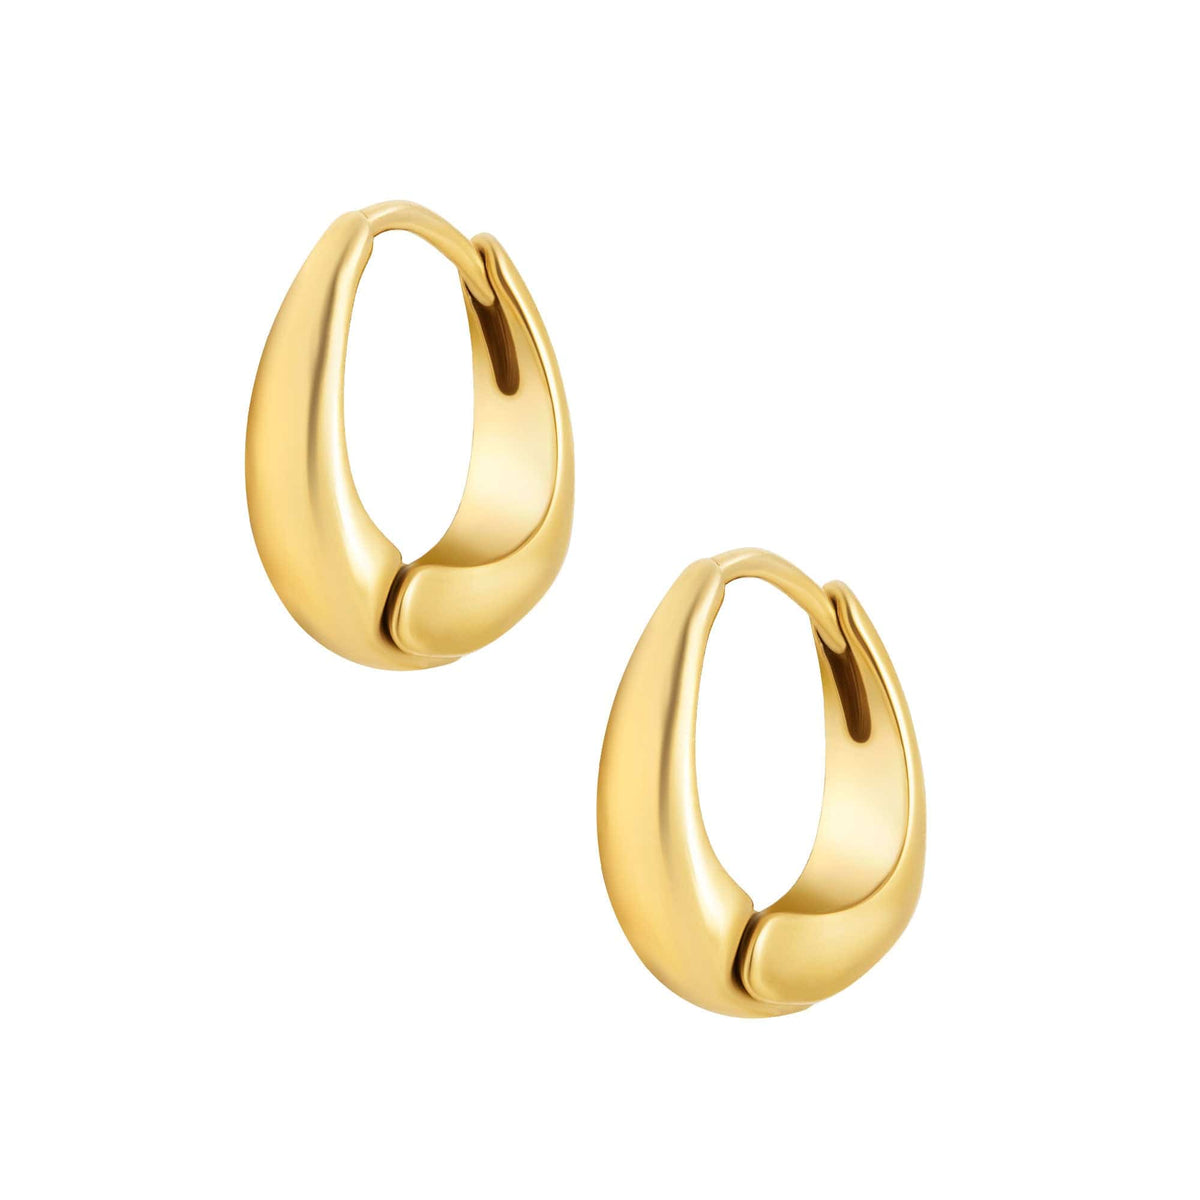 BOHOMOON Stainless Steel Lynette Hoop Earrings Gold